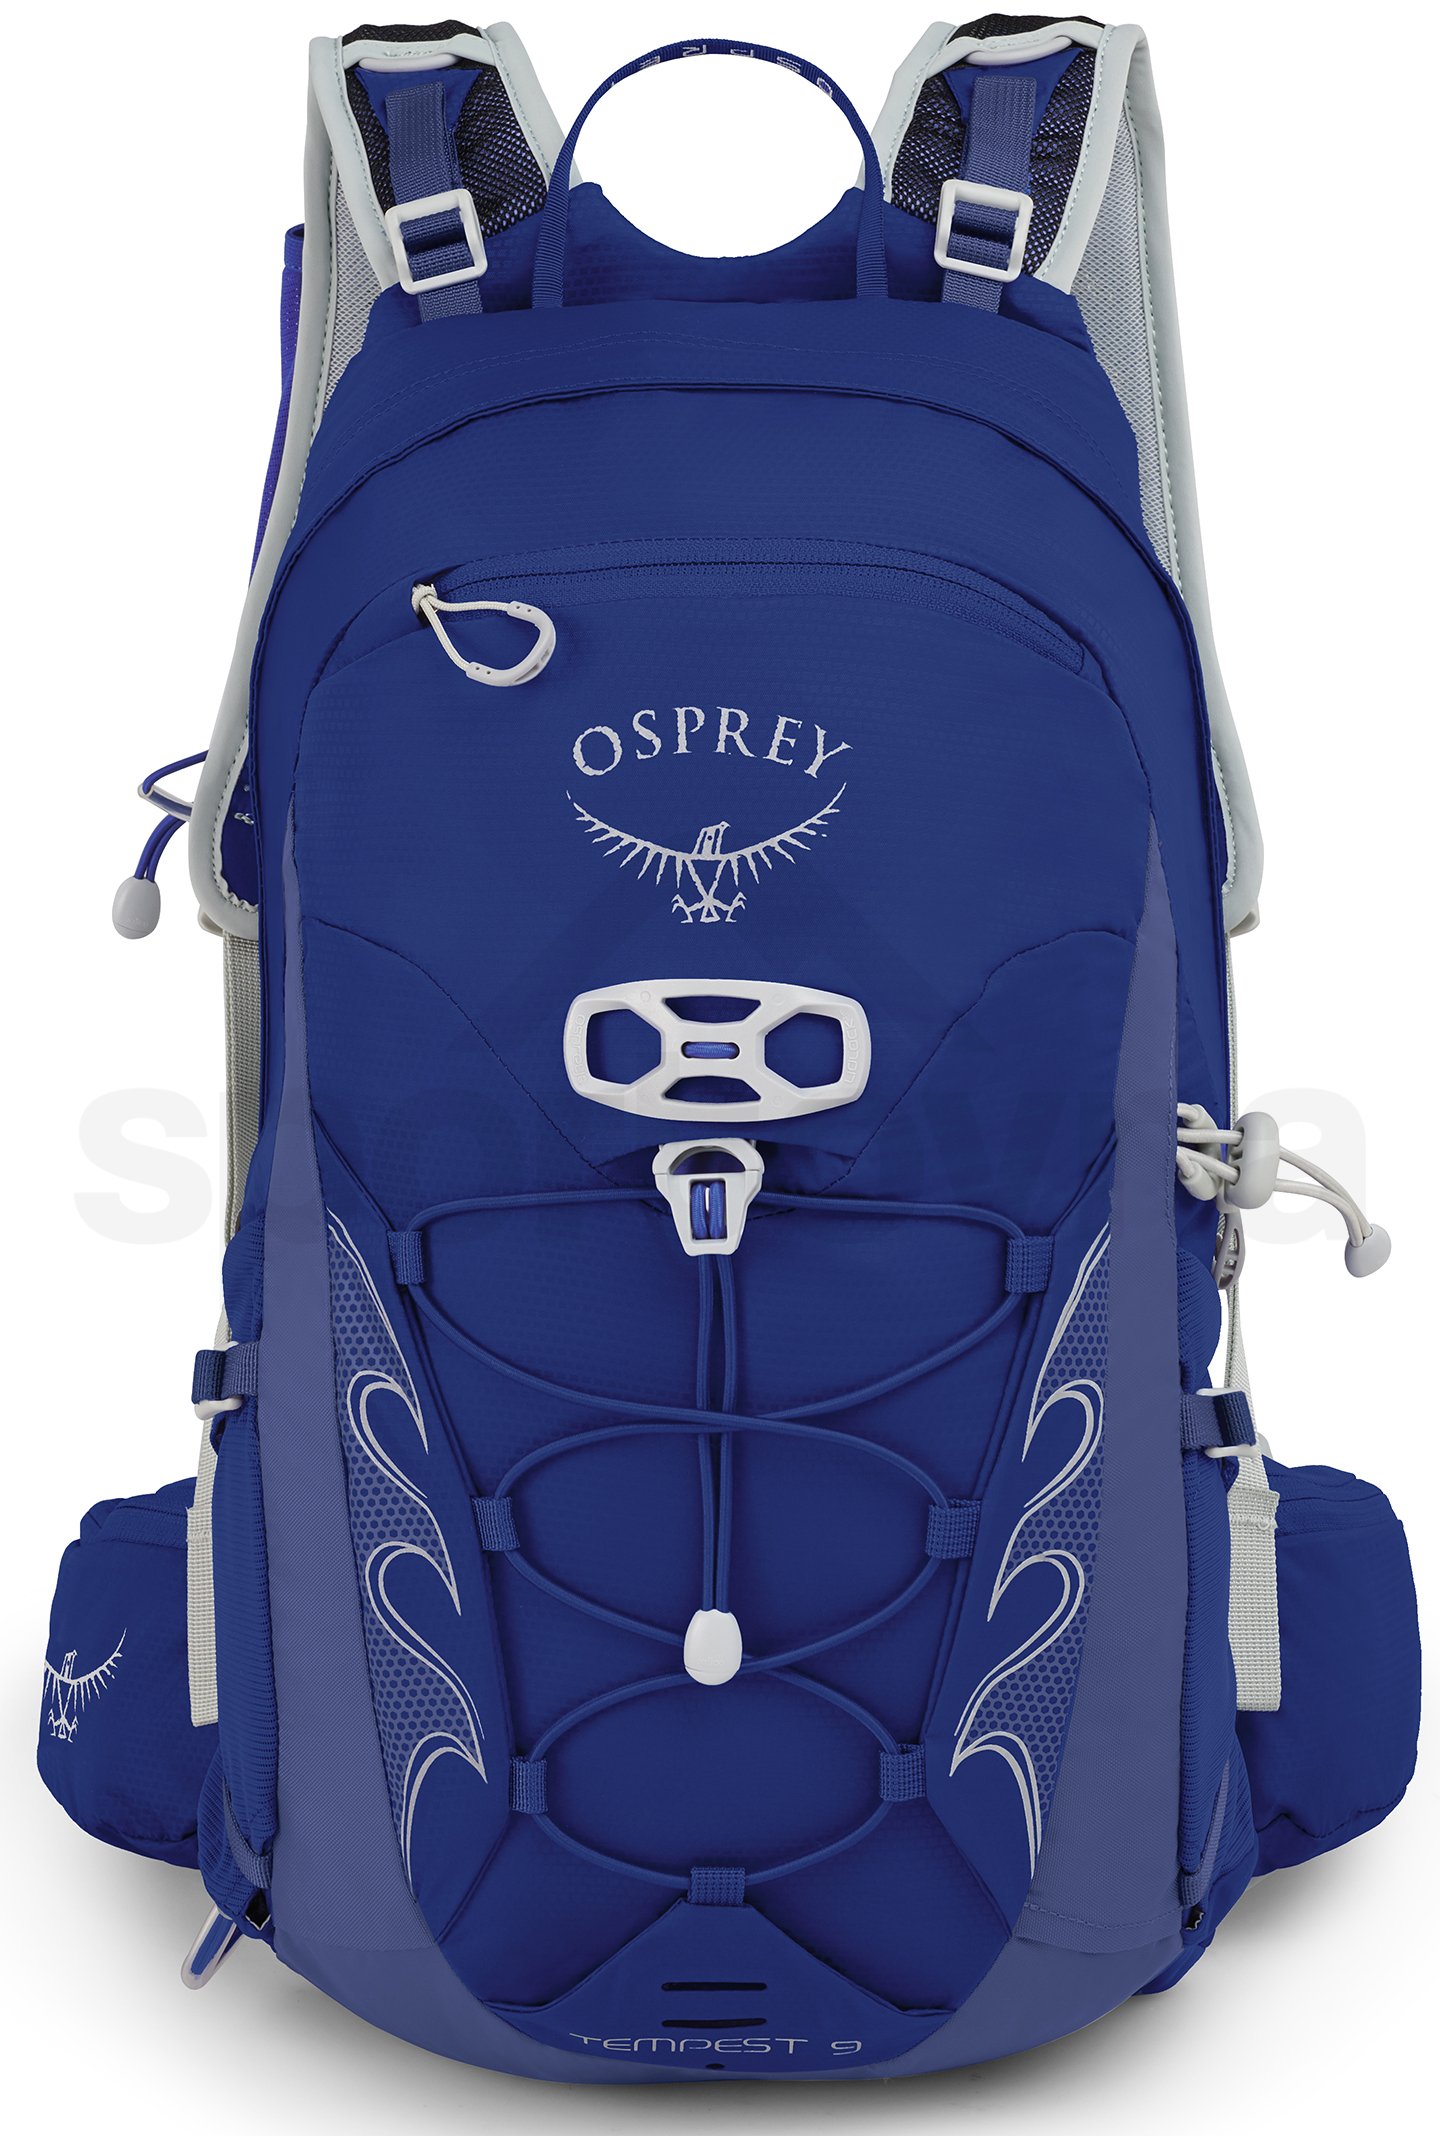 Batoh Osprey Tempest 9 II - modrá